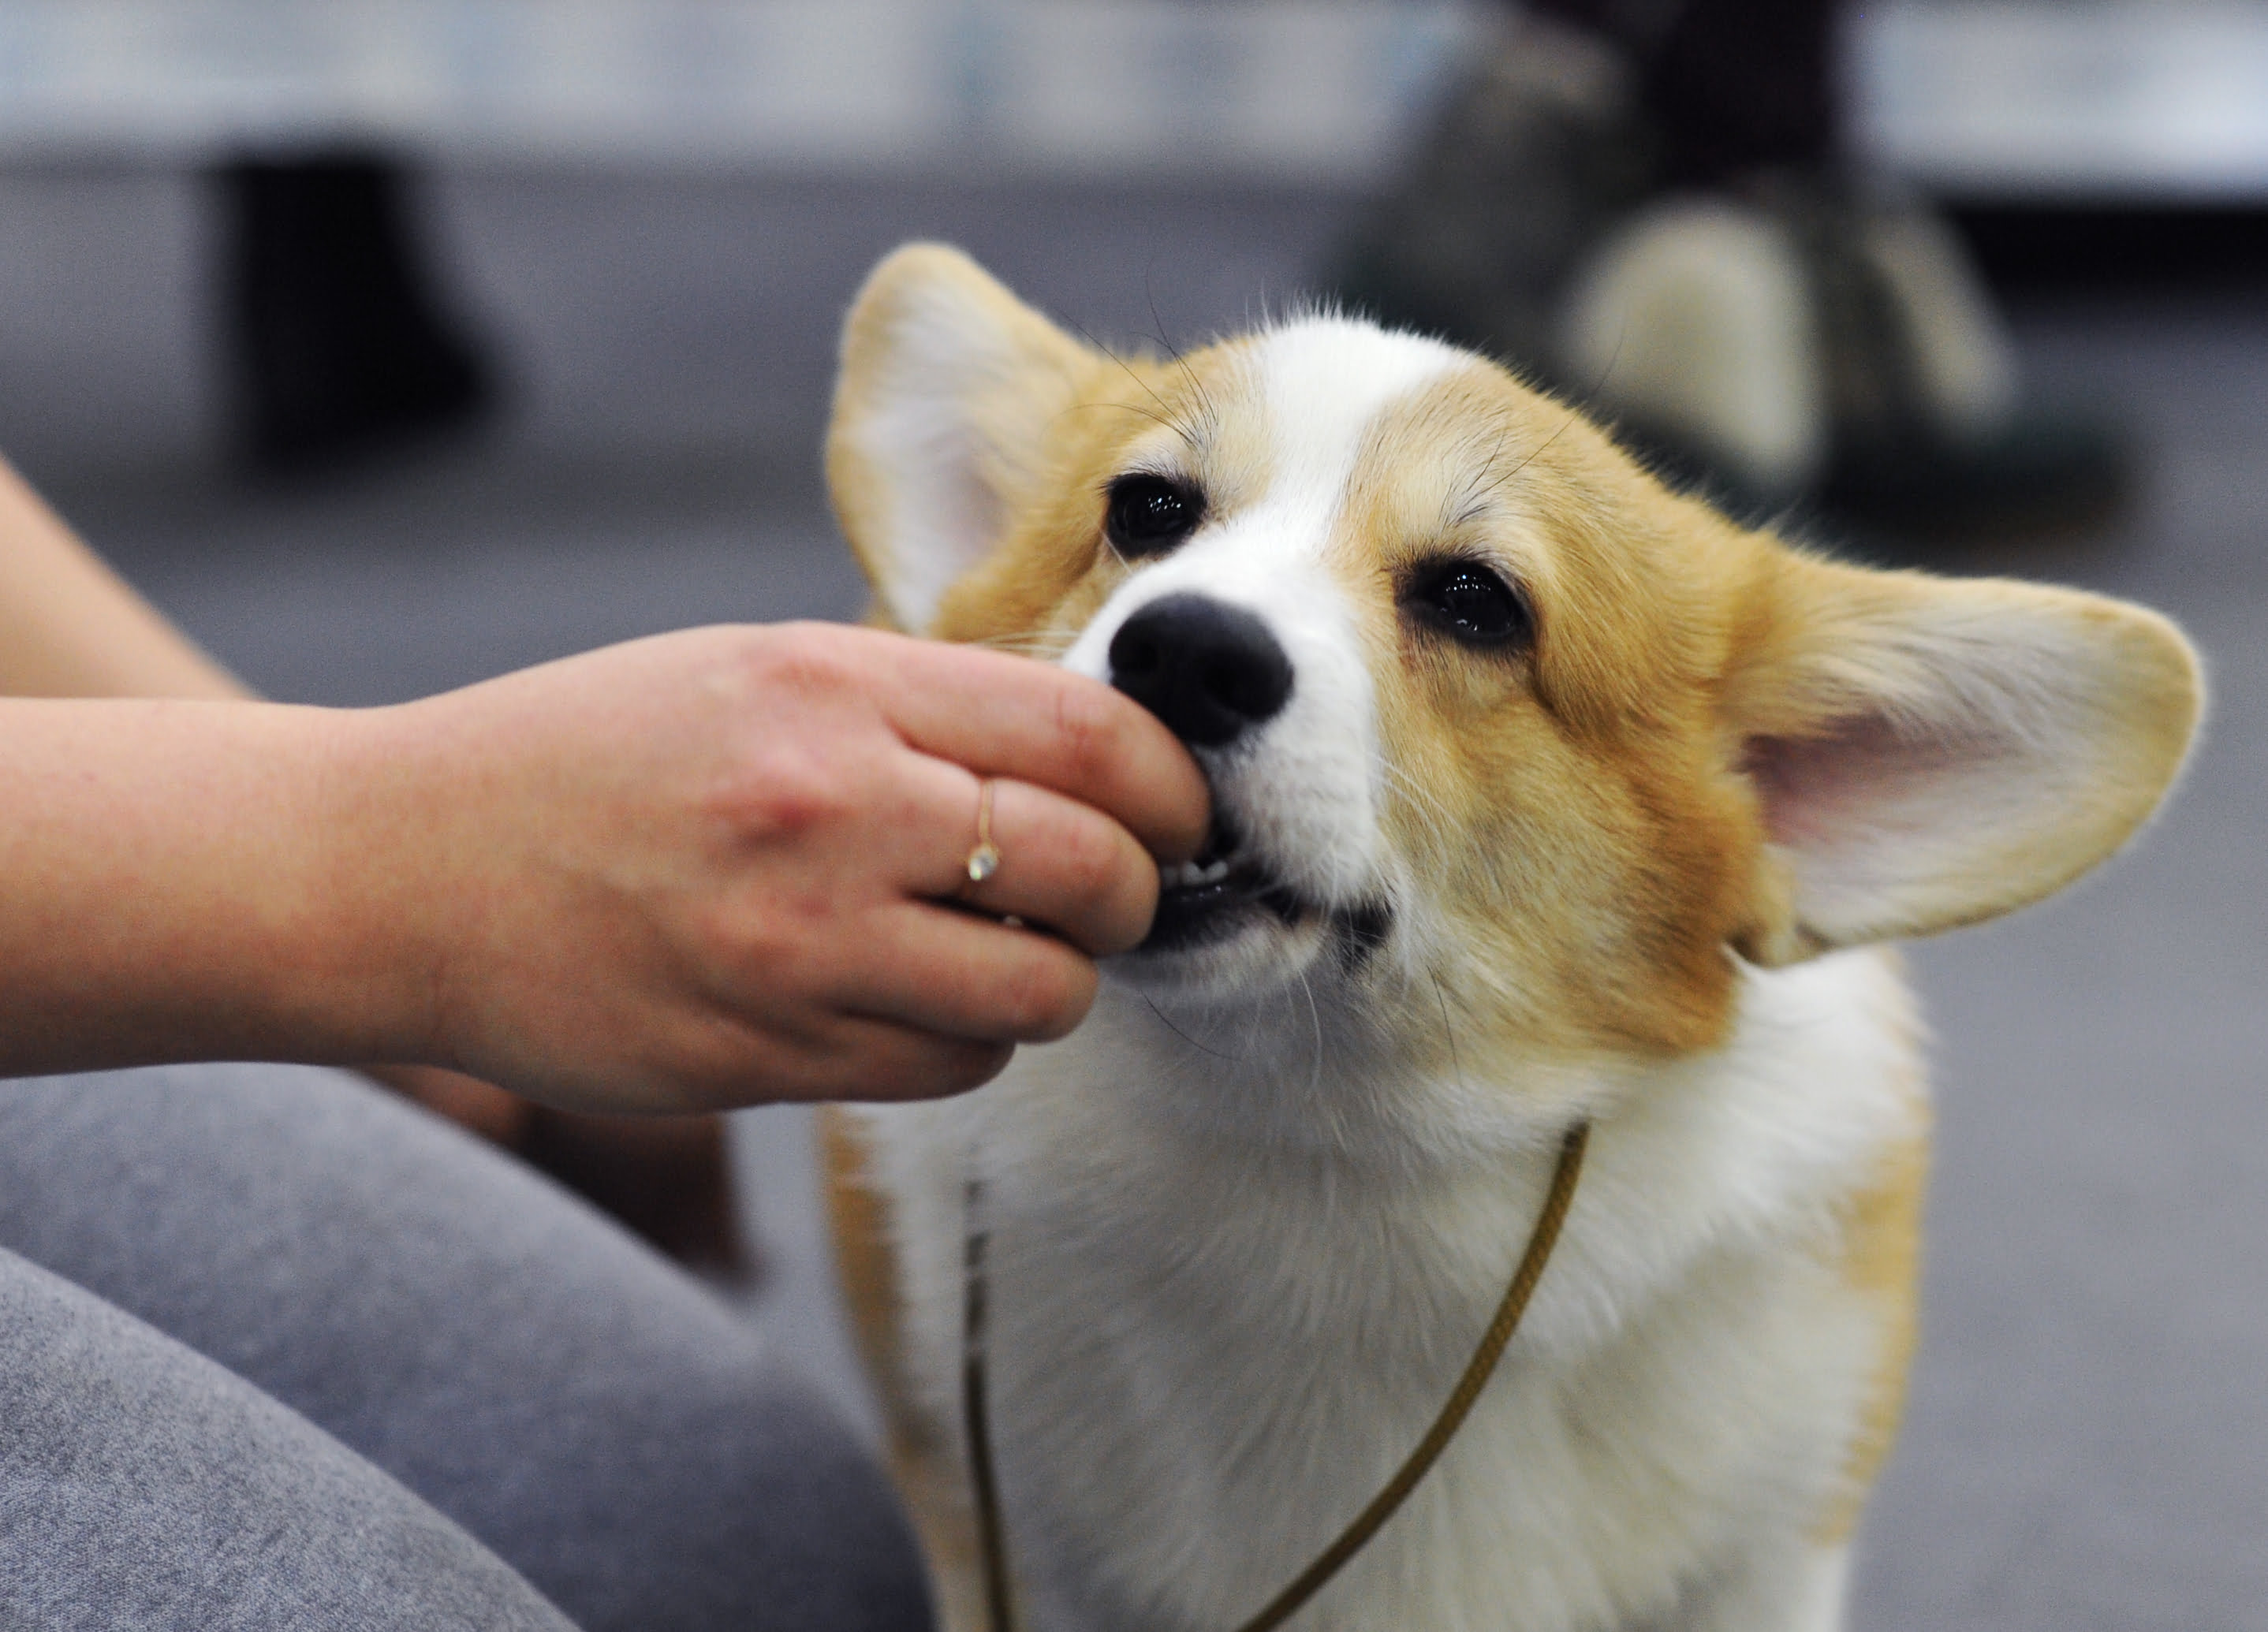 A imagem mostra um tutor colocando um comprimido na boca de um cachorro branco e amarelo.
